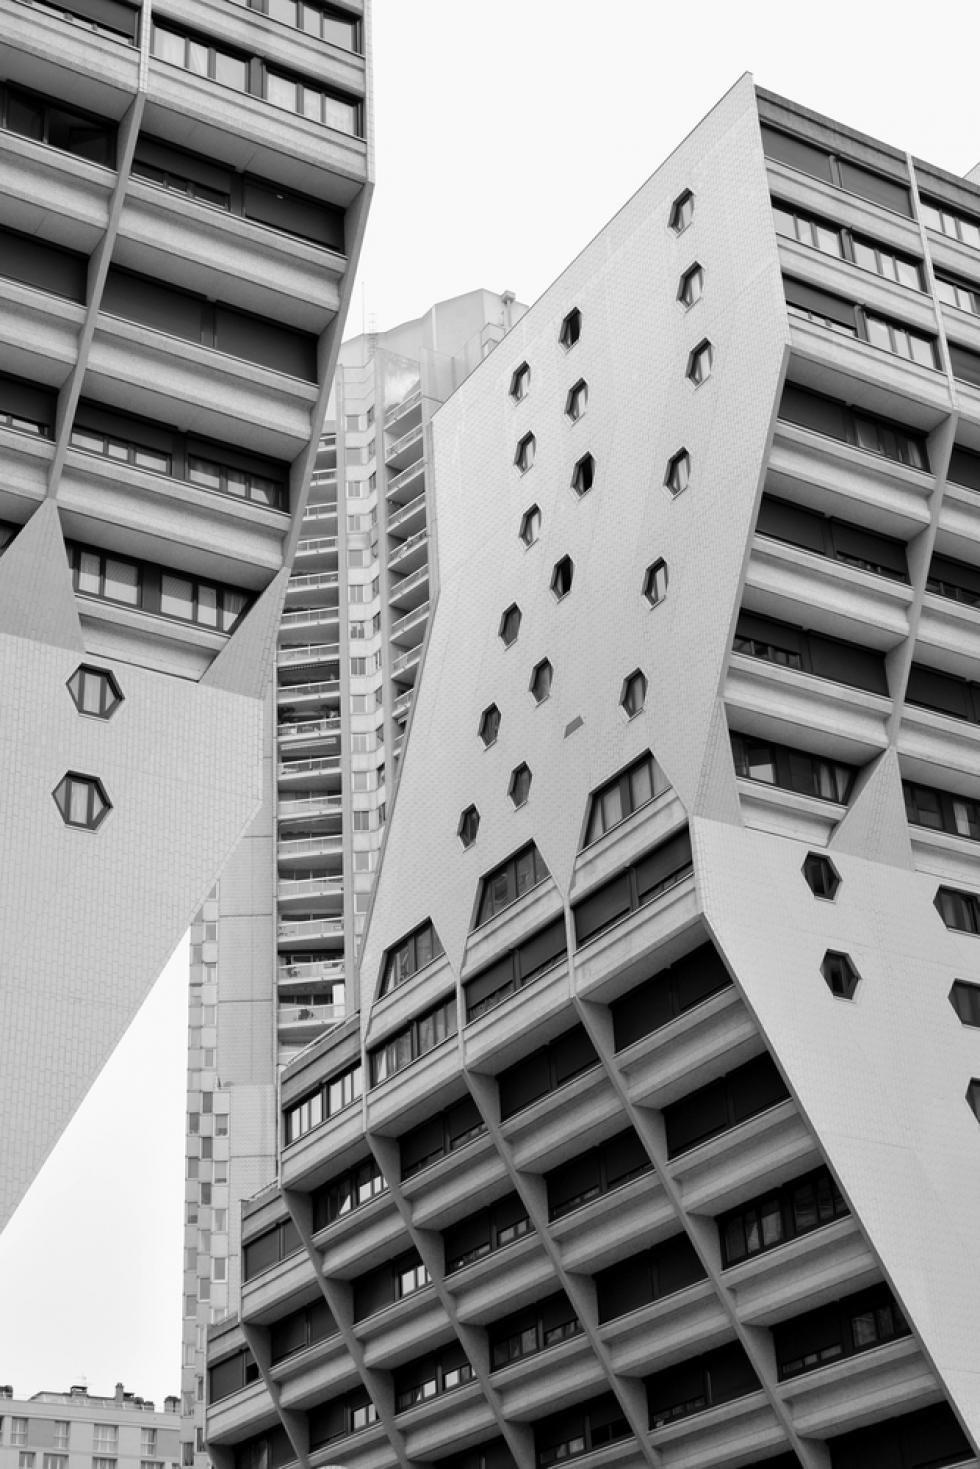 Párizs 20. századi építészeti városkalauz: Le Corbusier modern villáitól a brutalista birtokokig